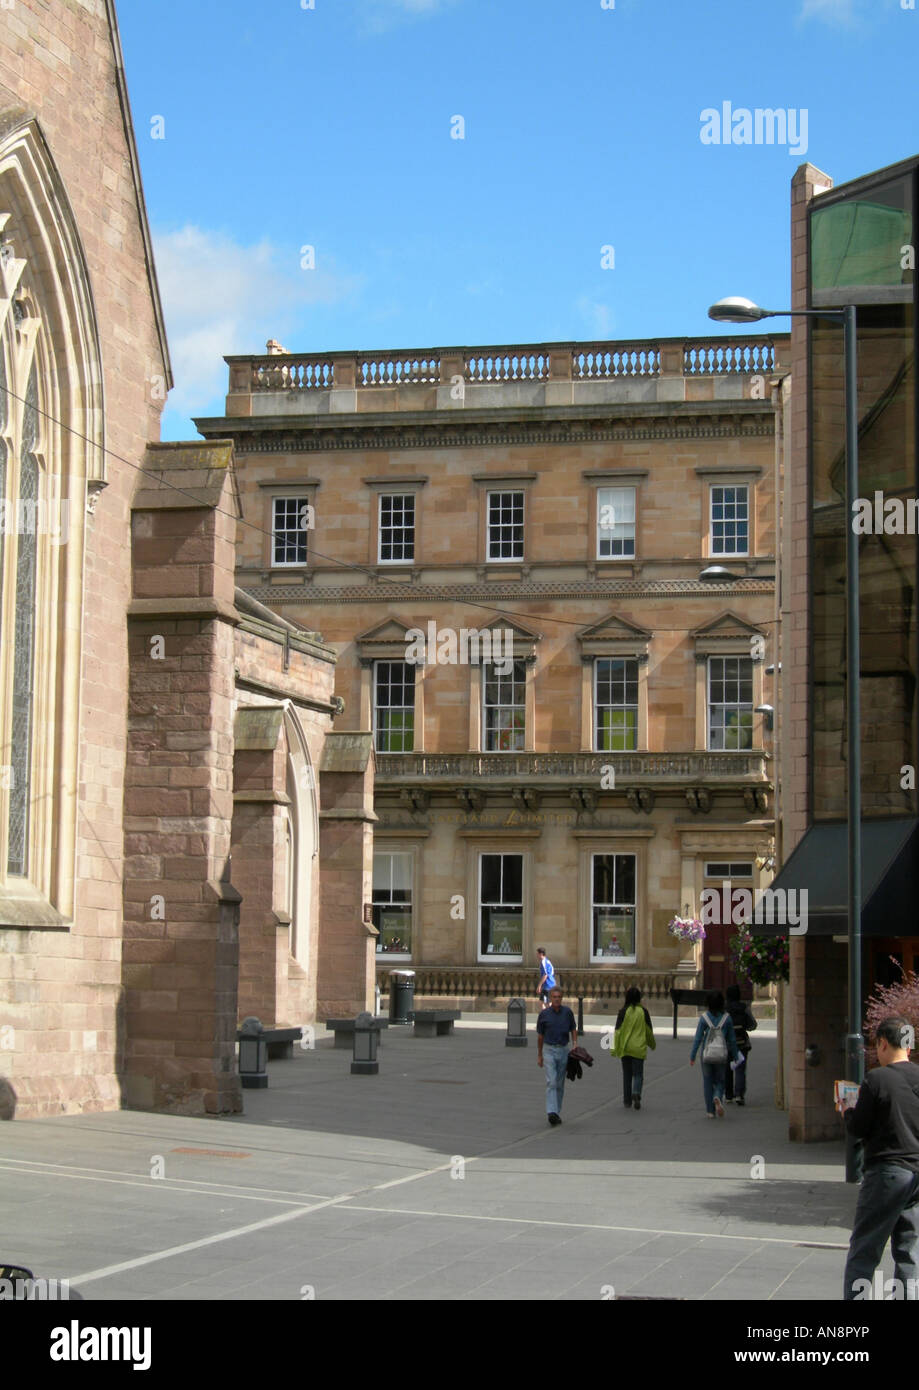 Los contrastes arquitectónicos - edificio georgiano, flanqueado por la iglesia del siglo XV (izquierda) y oficinas del siglo XX, Perth, REINO UNIDO Foto de stock